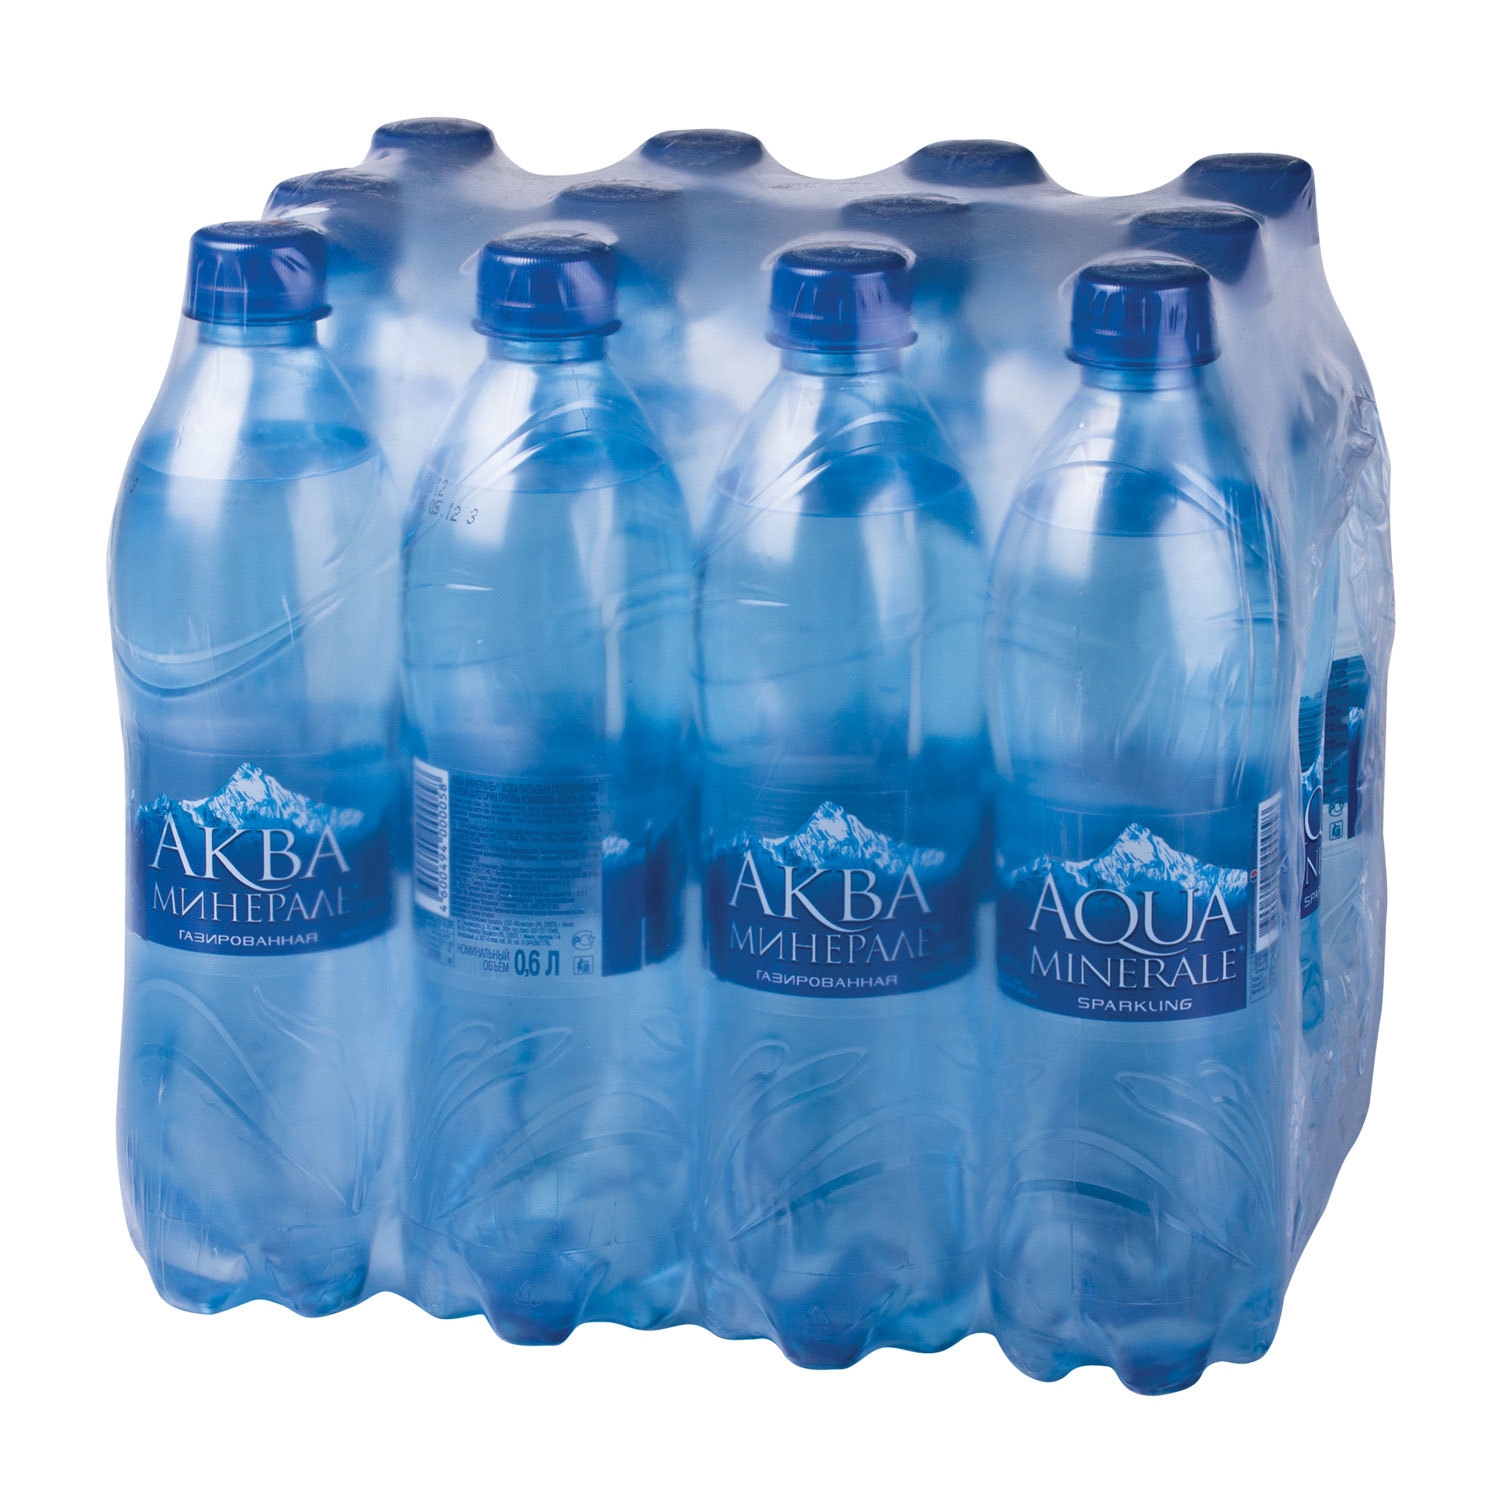 Заказ воды недорого. Минеральная вода Aqua minerale. Вода Aqua minerale 5 литров. Минеральная вода газированная, Aqua minerale. Аква Минерале 1.5 литра.